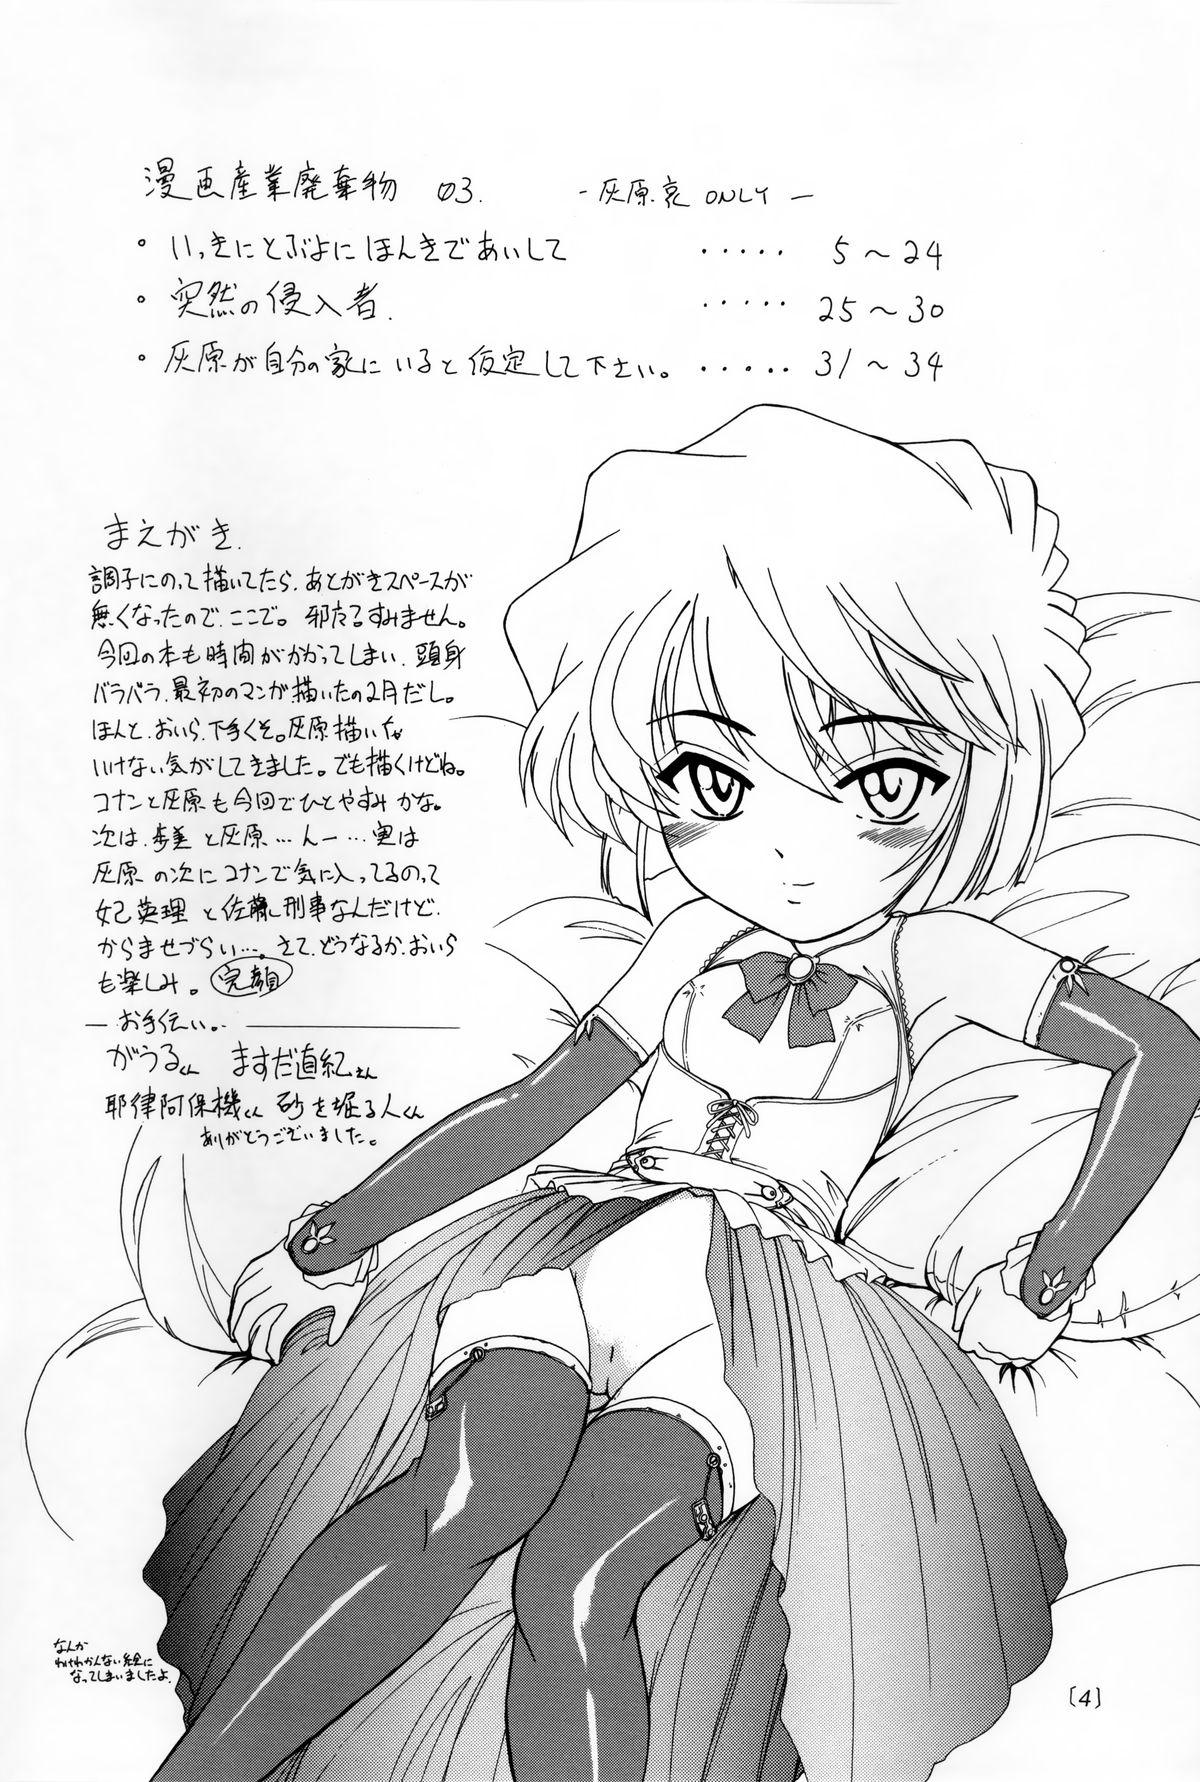 Carro Manga Sangyou Haikibutsu 03 - Detective conan Sfm - Page 3